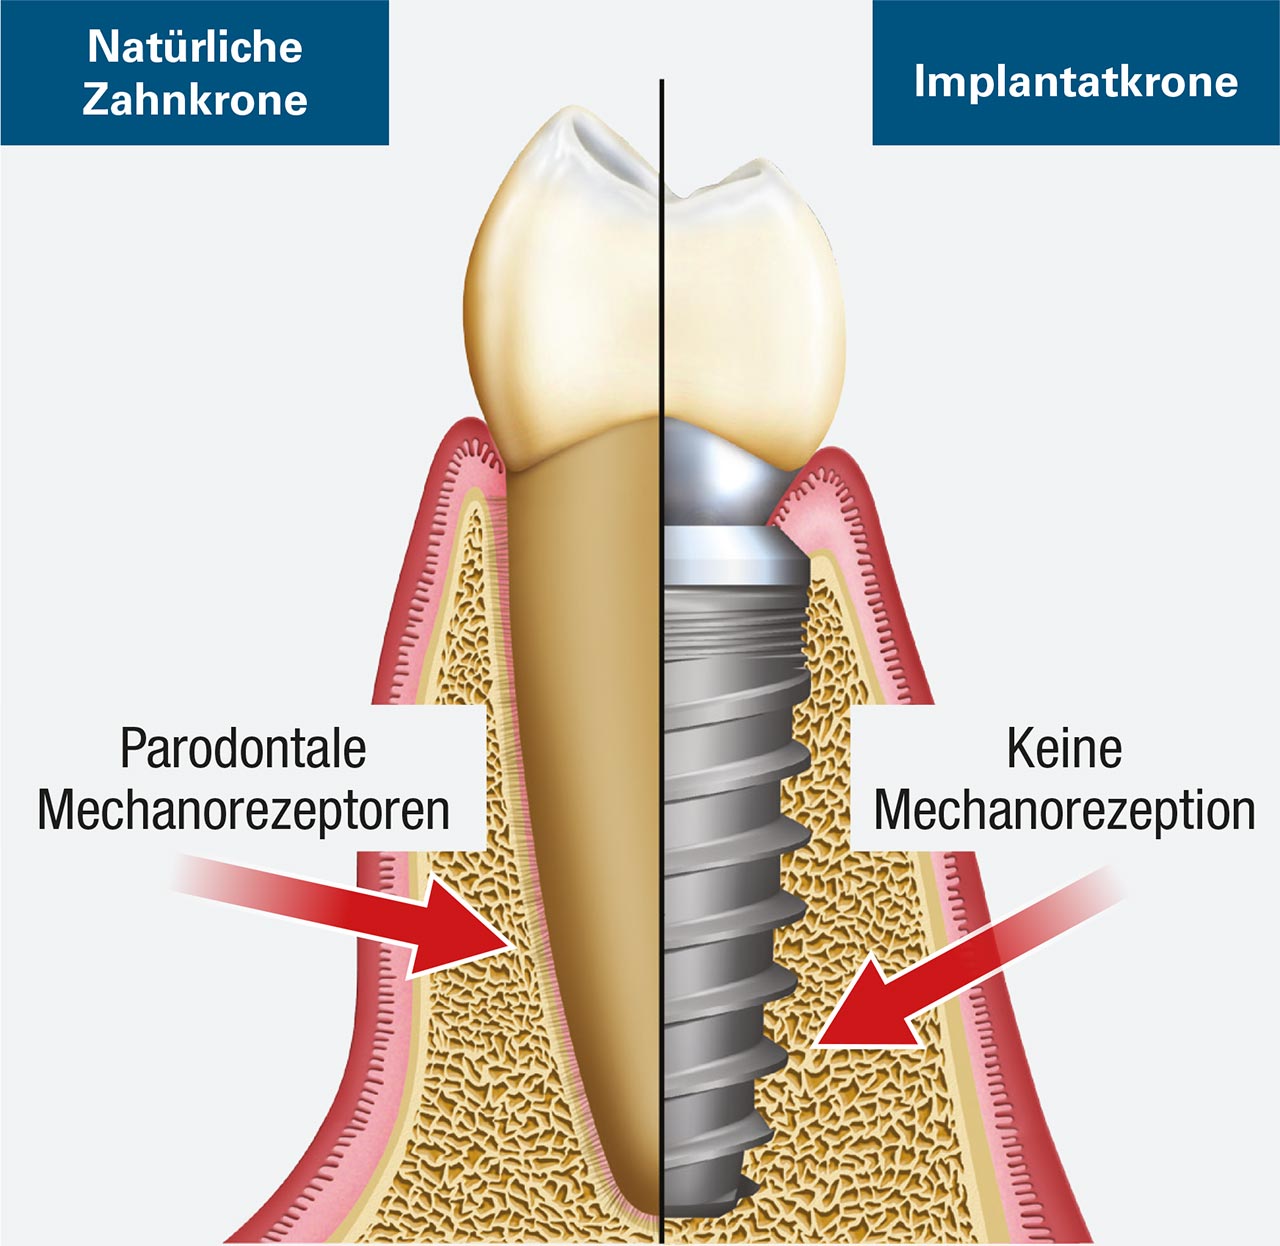 Abb. 1 Der natürliche Zahn enthält ein Parodontalligament (PDL), während beim Implantat ein solches PDL fehlt und eine direkte Knochen-Schnittstelle vorhanden ist.